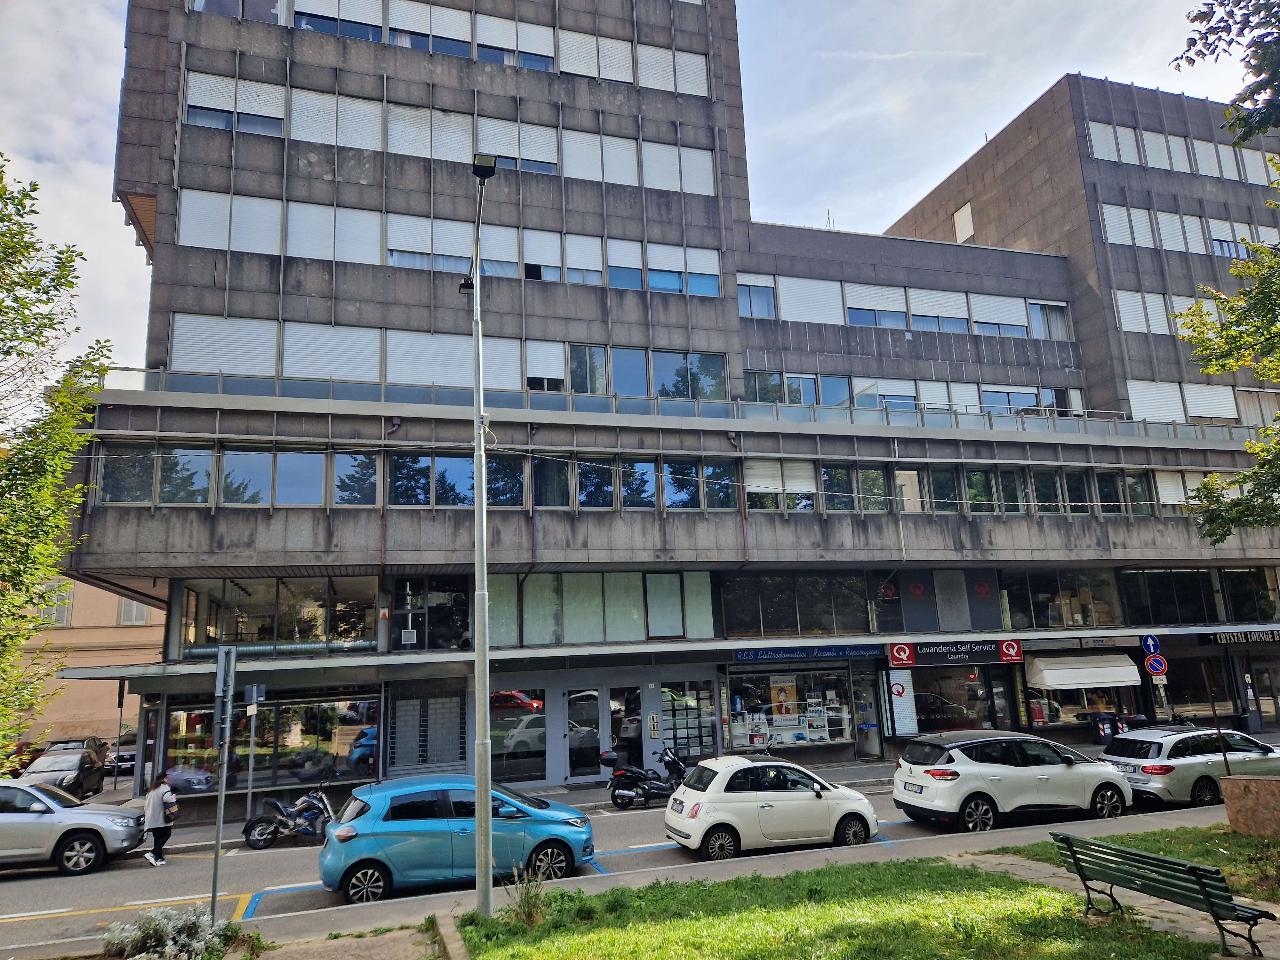 Ufficio in vendita a Varese